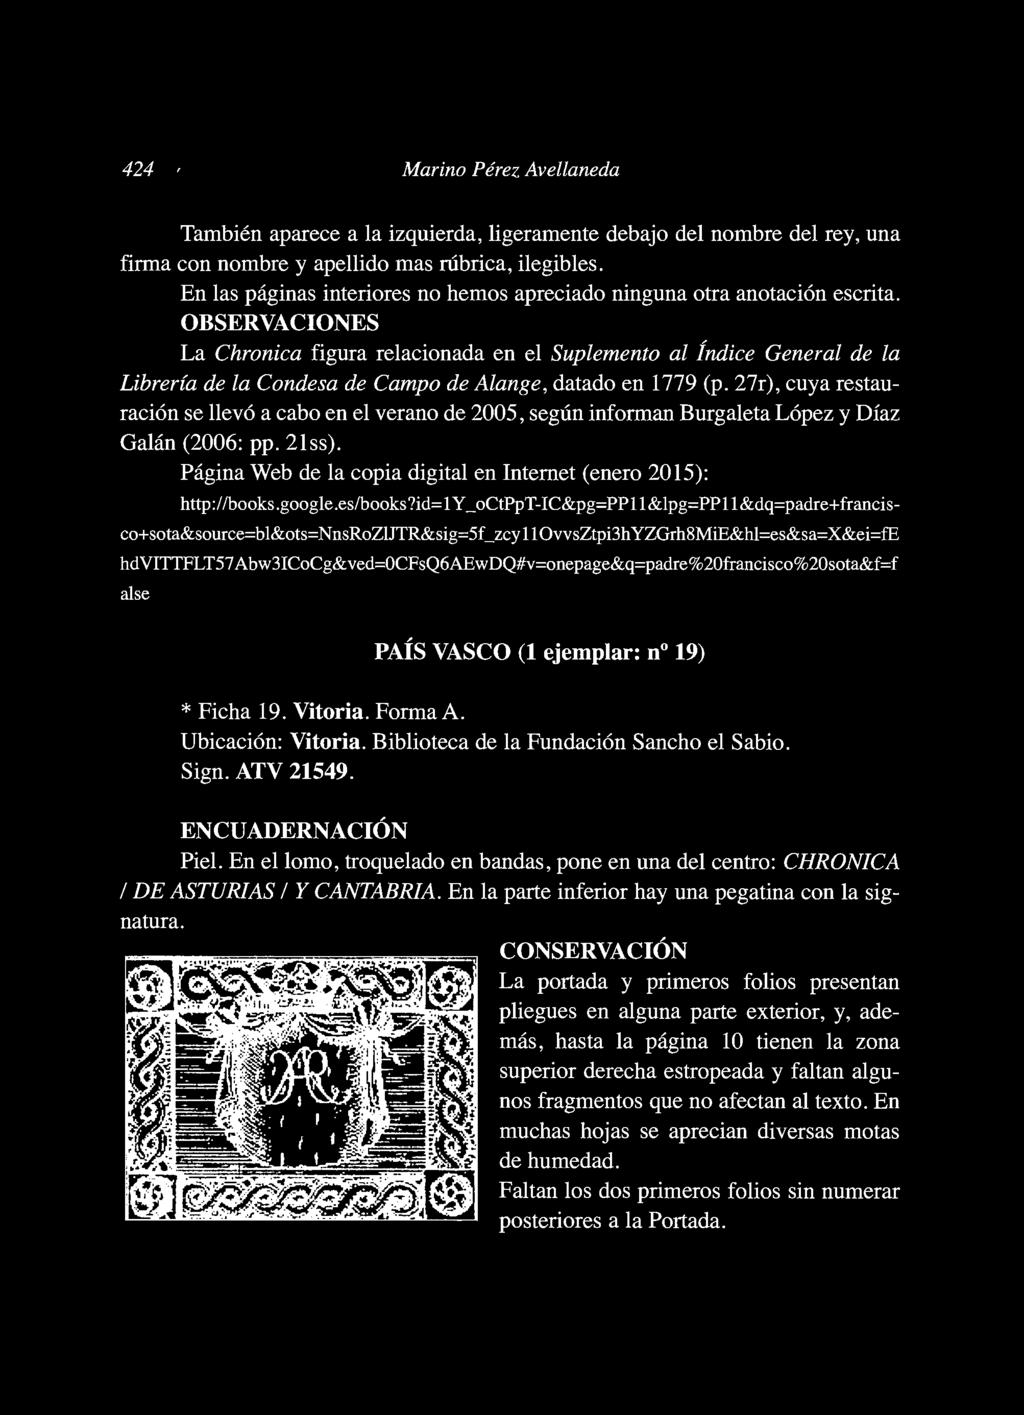 OBSERVACIONES La Chronica figura relacionada en el Suplemento al Índice General de la Librería de la Condesa de Campo de Alange, datado en 1779 (p.